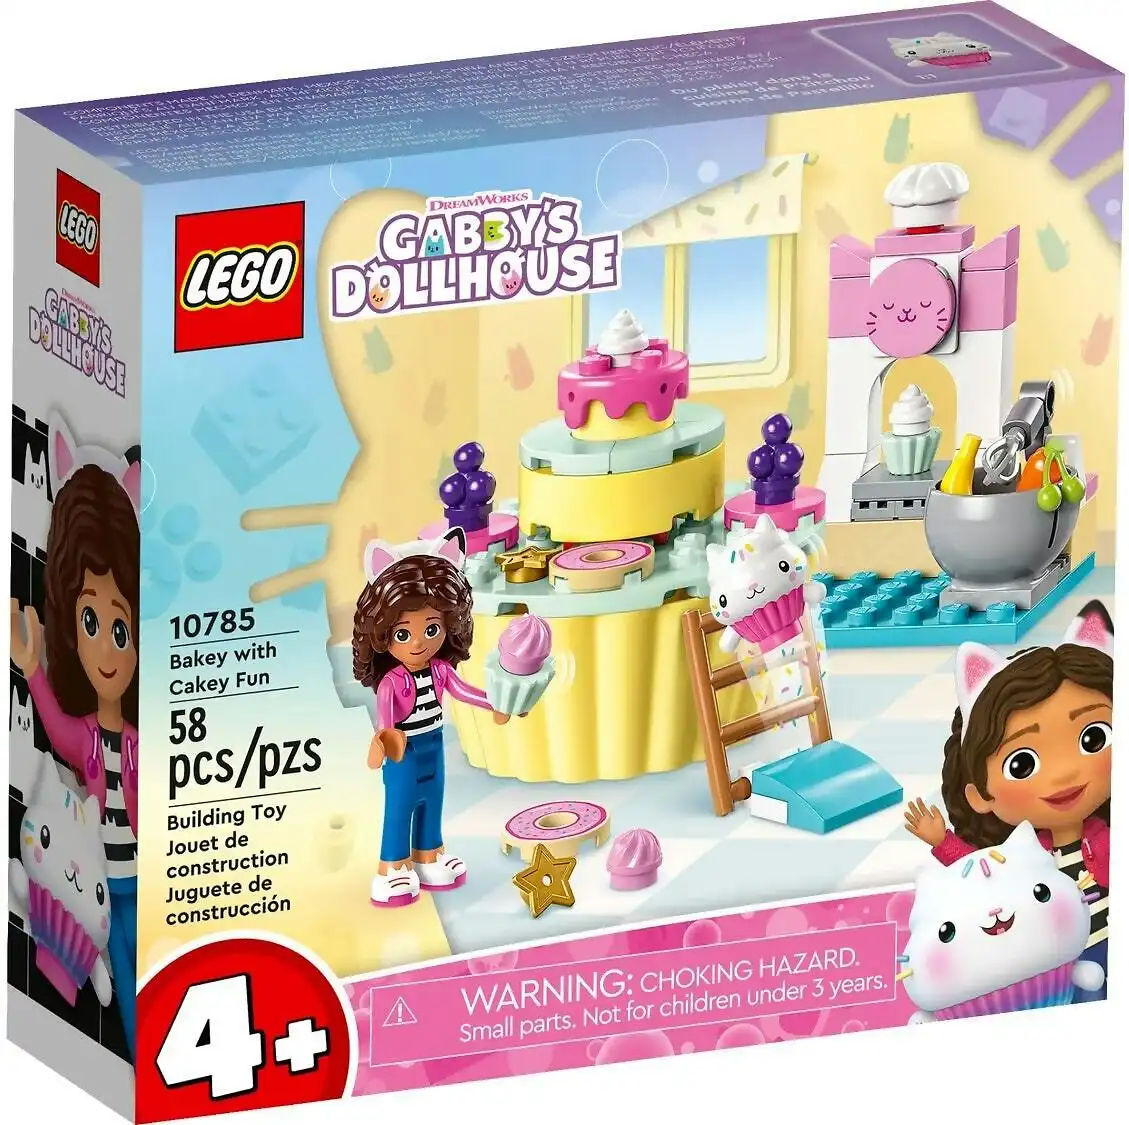 LEGO 10785 Bakey with Cakey Fun - Gabby's Dollhouse 4+